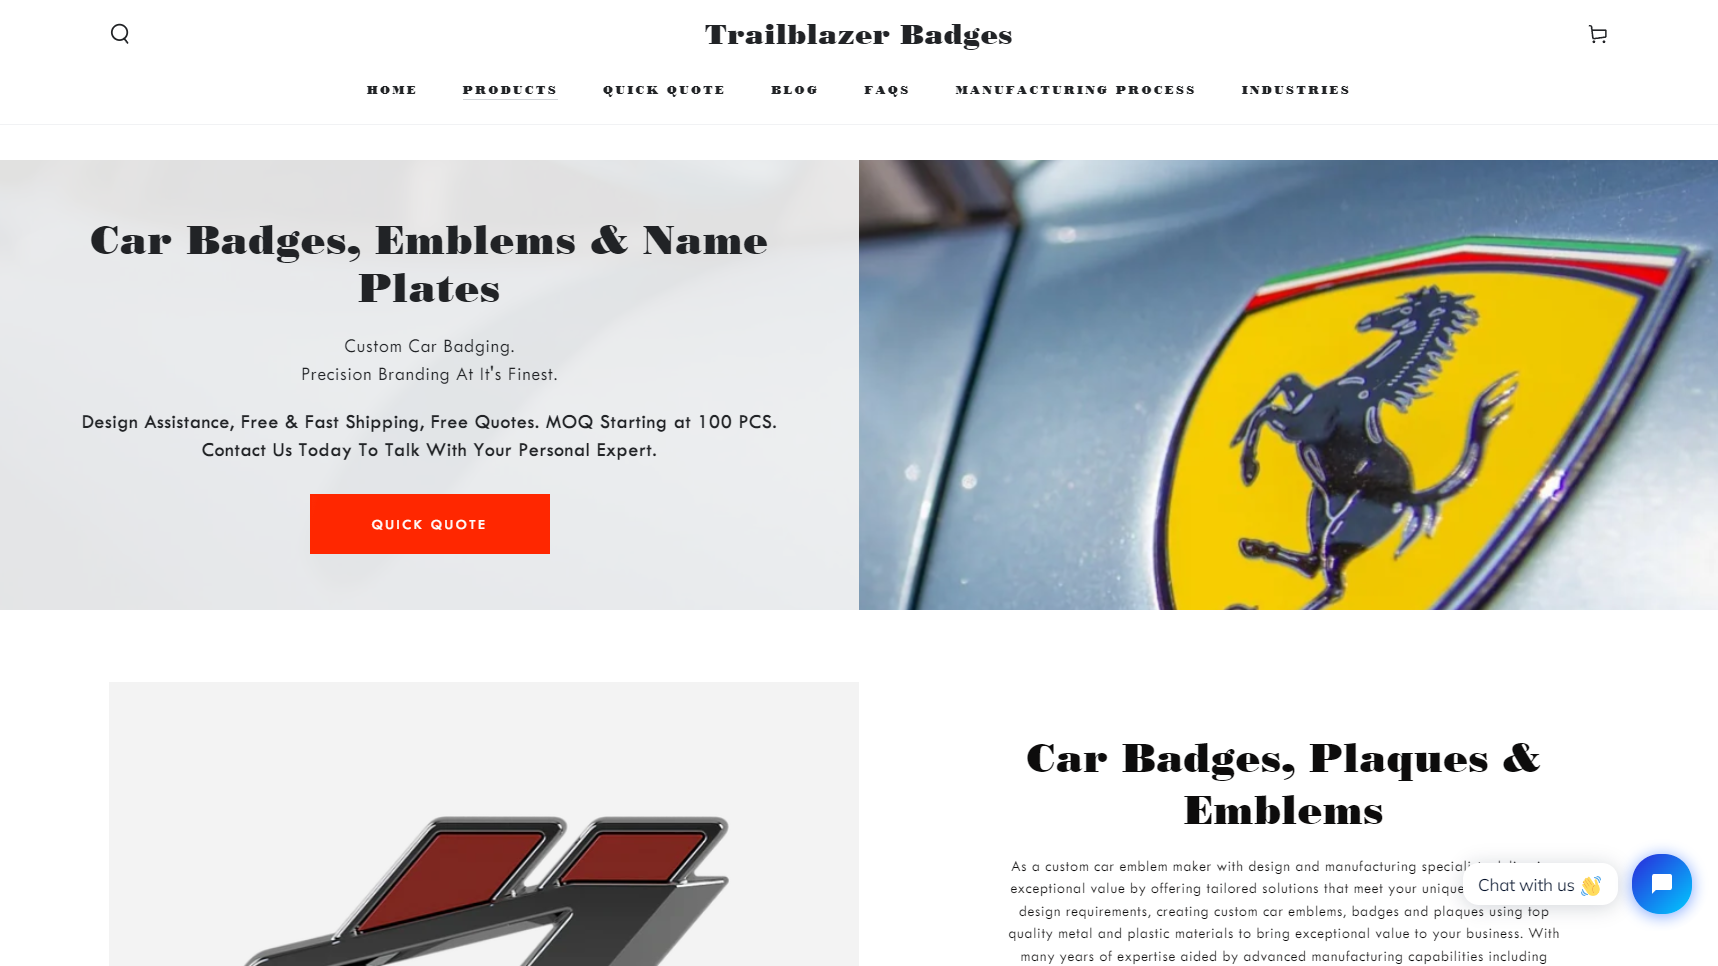 Trailblazer Badges - Car Emblem Manufacturer